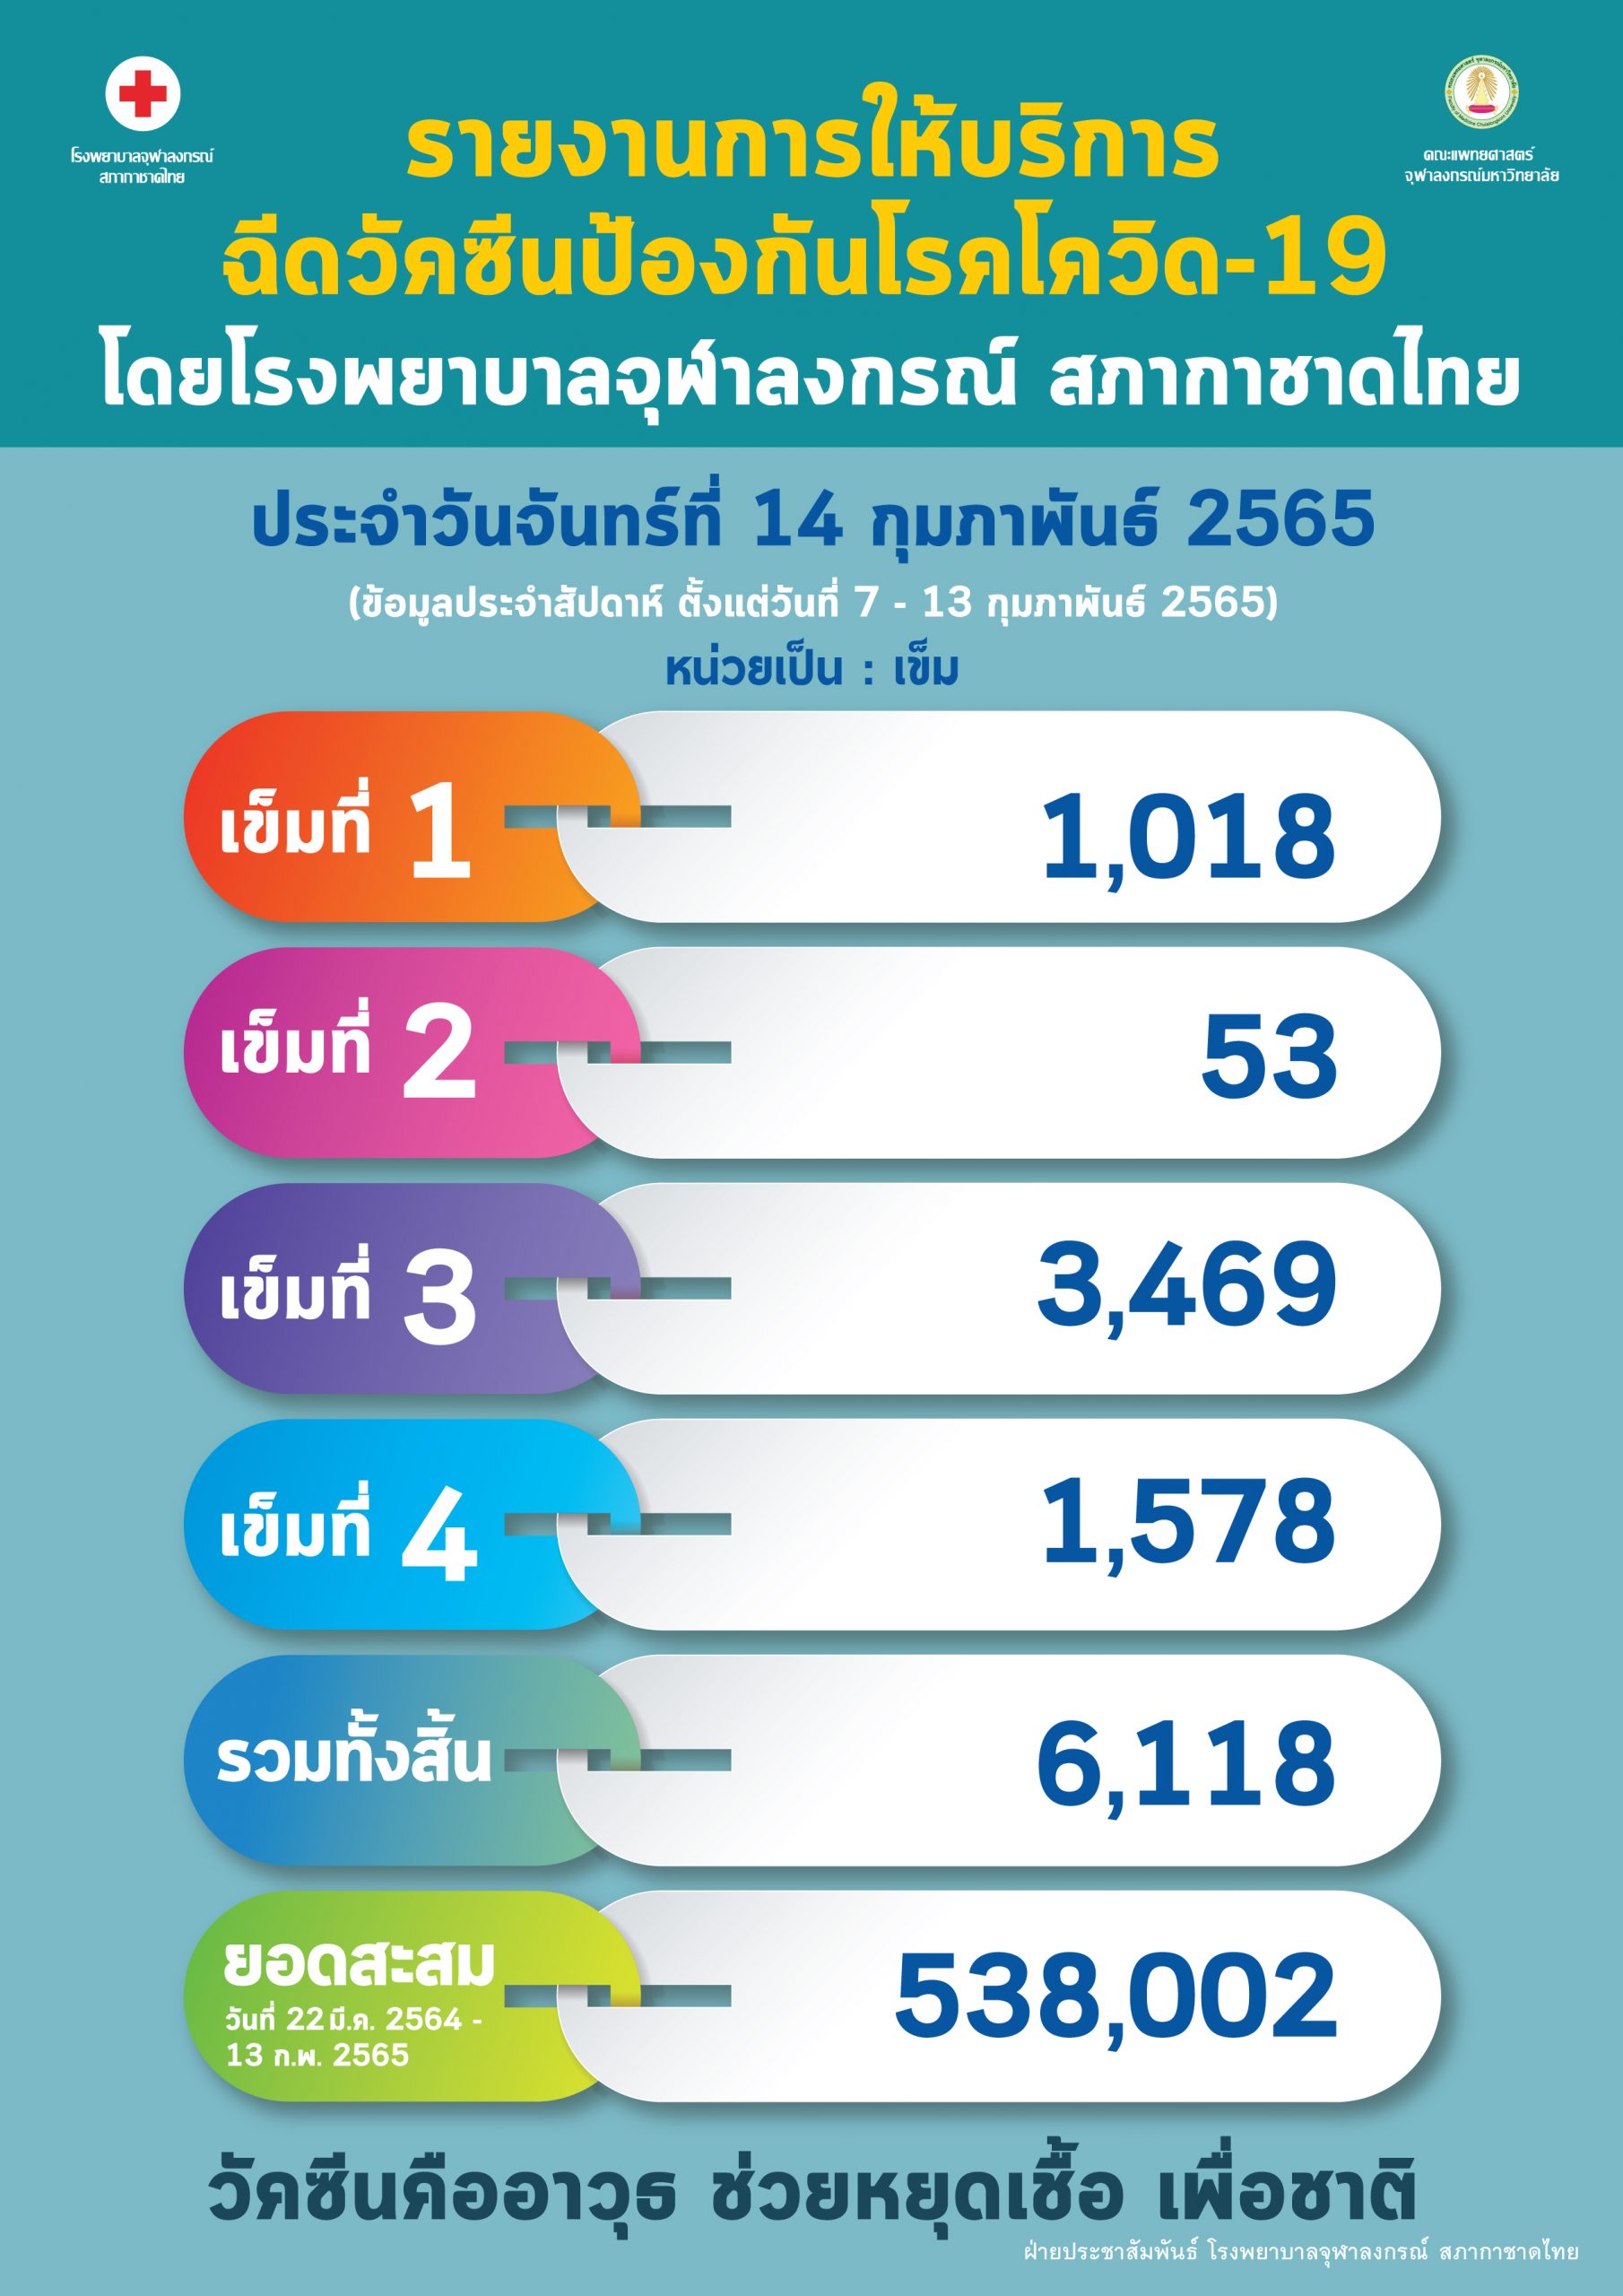 รายงานการให้บริการฉีดวัคซีนป้องกันโรคโควิด-19 โดยโรงพยาบาลจุฬาลงกรณ์ สภากาชาดไทย ประจำวันจันทร์ที่ 14 กุมภาพันธ์ 2565